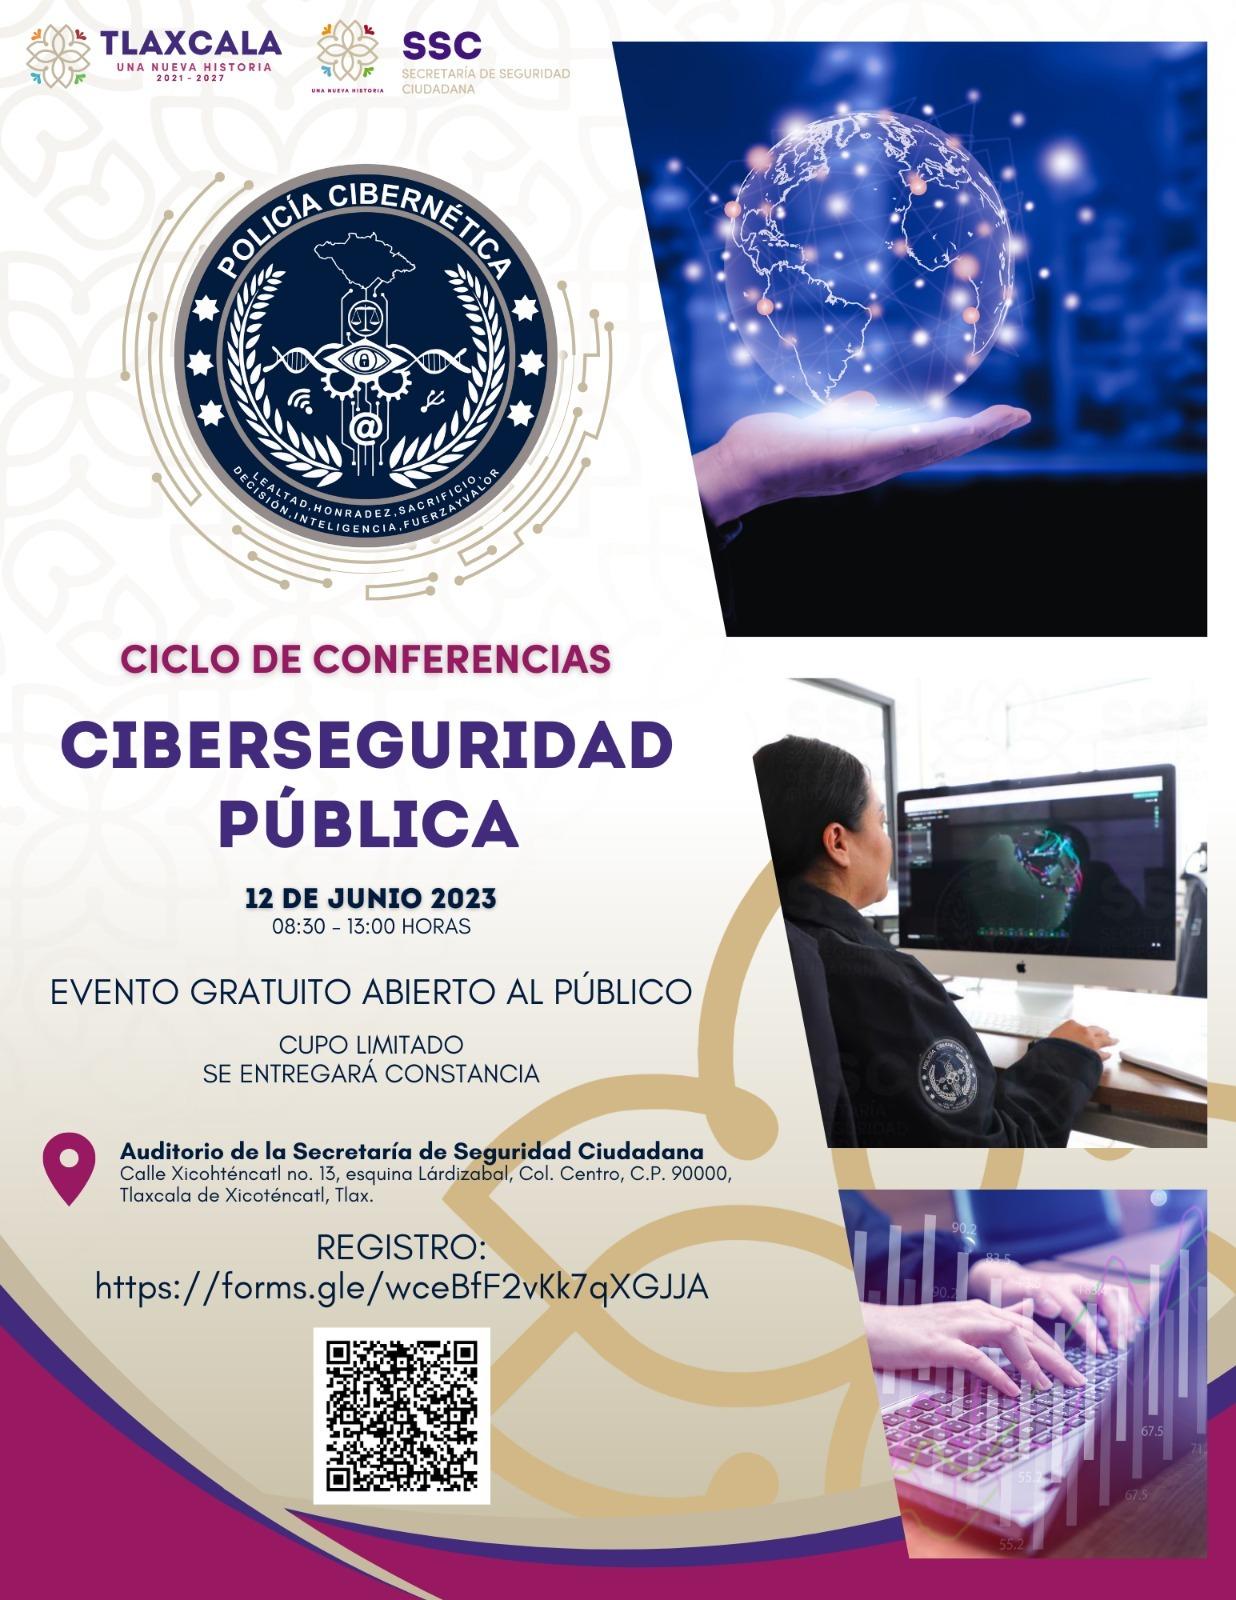 Invita SSC a ciclo de conferencias de ciberseguridad pública